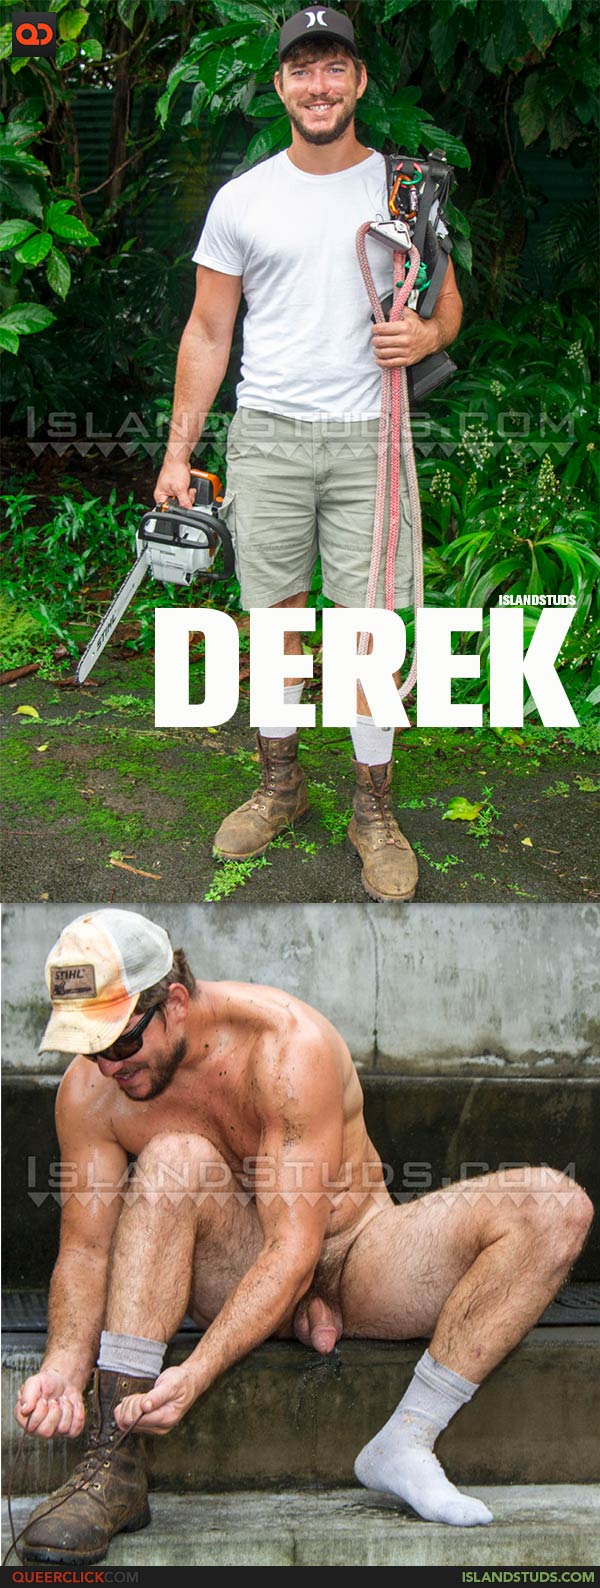 Island Studs: Derek